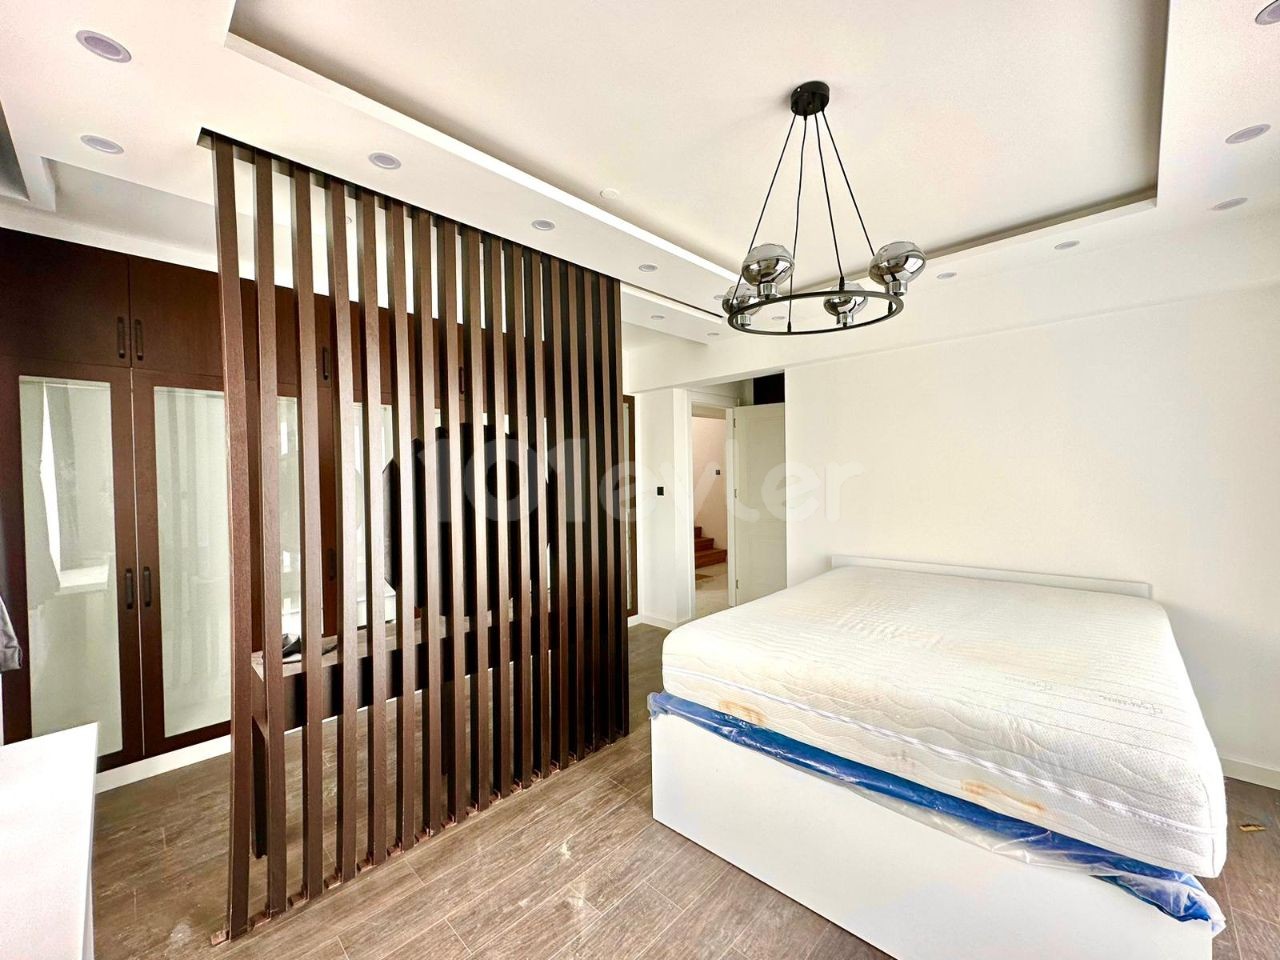 3 bedroom semi-detached villa for sale in Karaoğlanoğlu